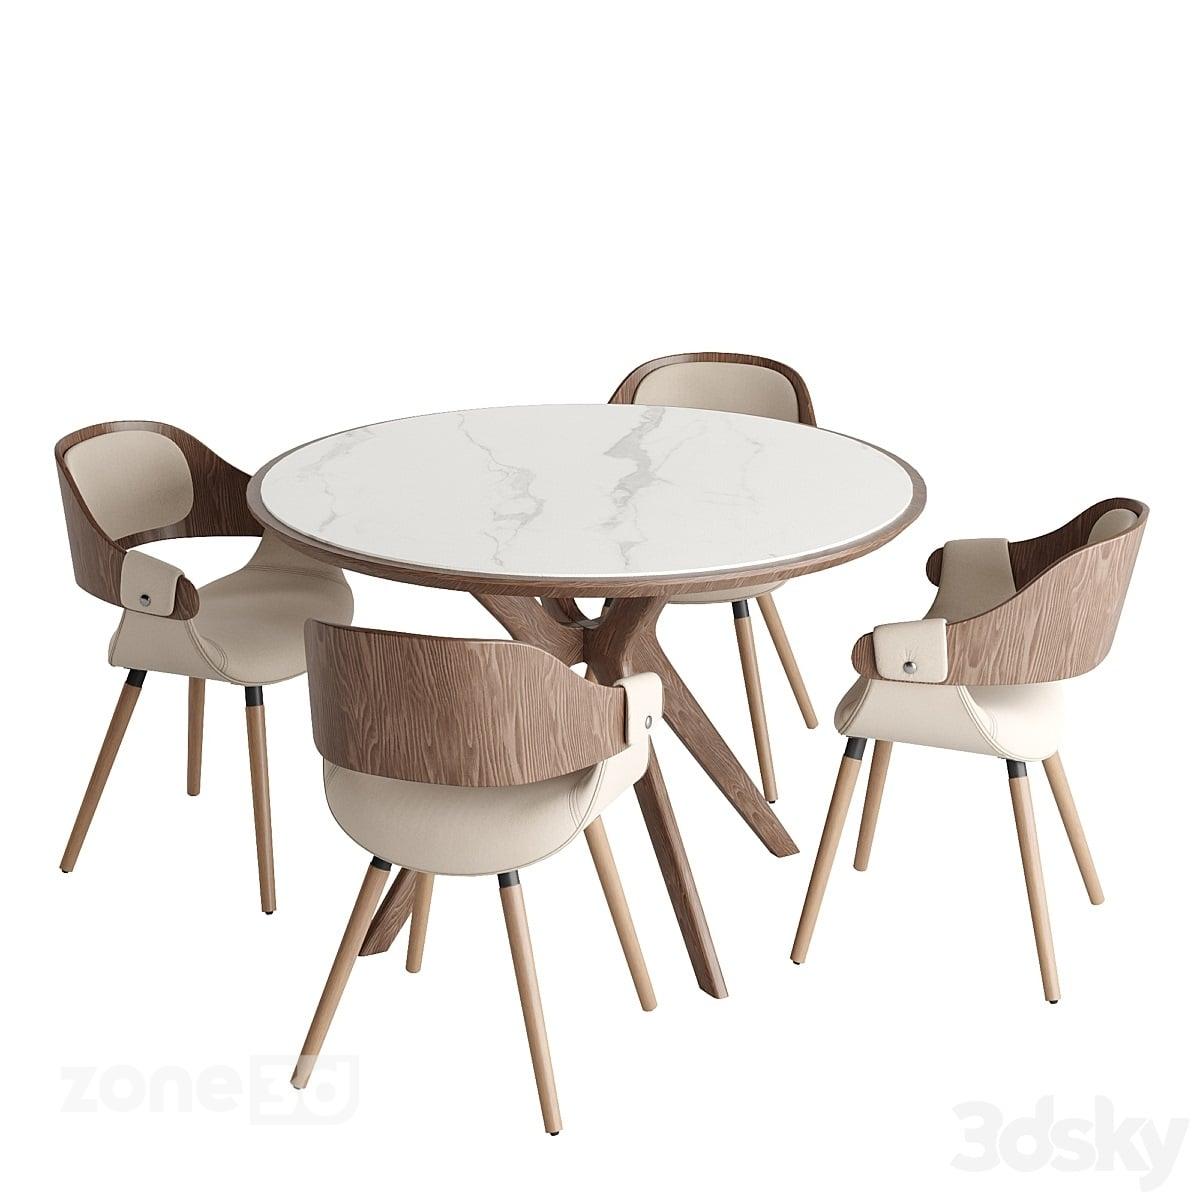 آبجکت ست میز گرد غذاخوری چوبی و سنگی چهارنفره با صندلی چوبی و پارچه ای مدل Tango and Jody